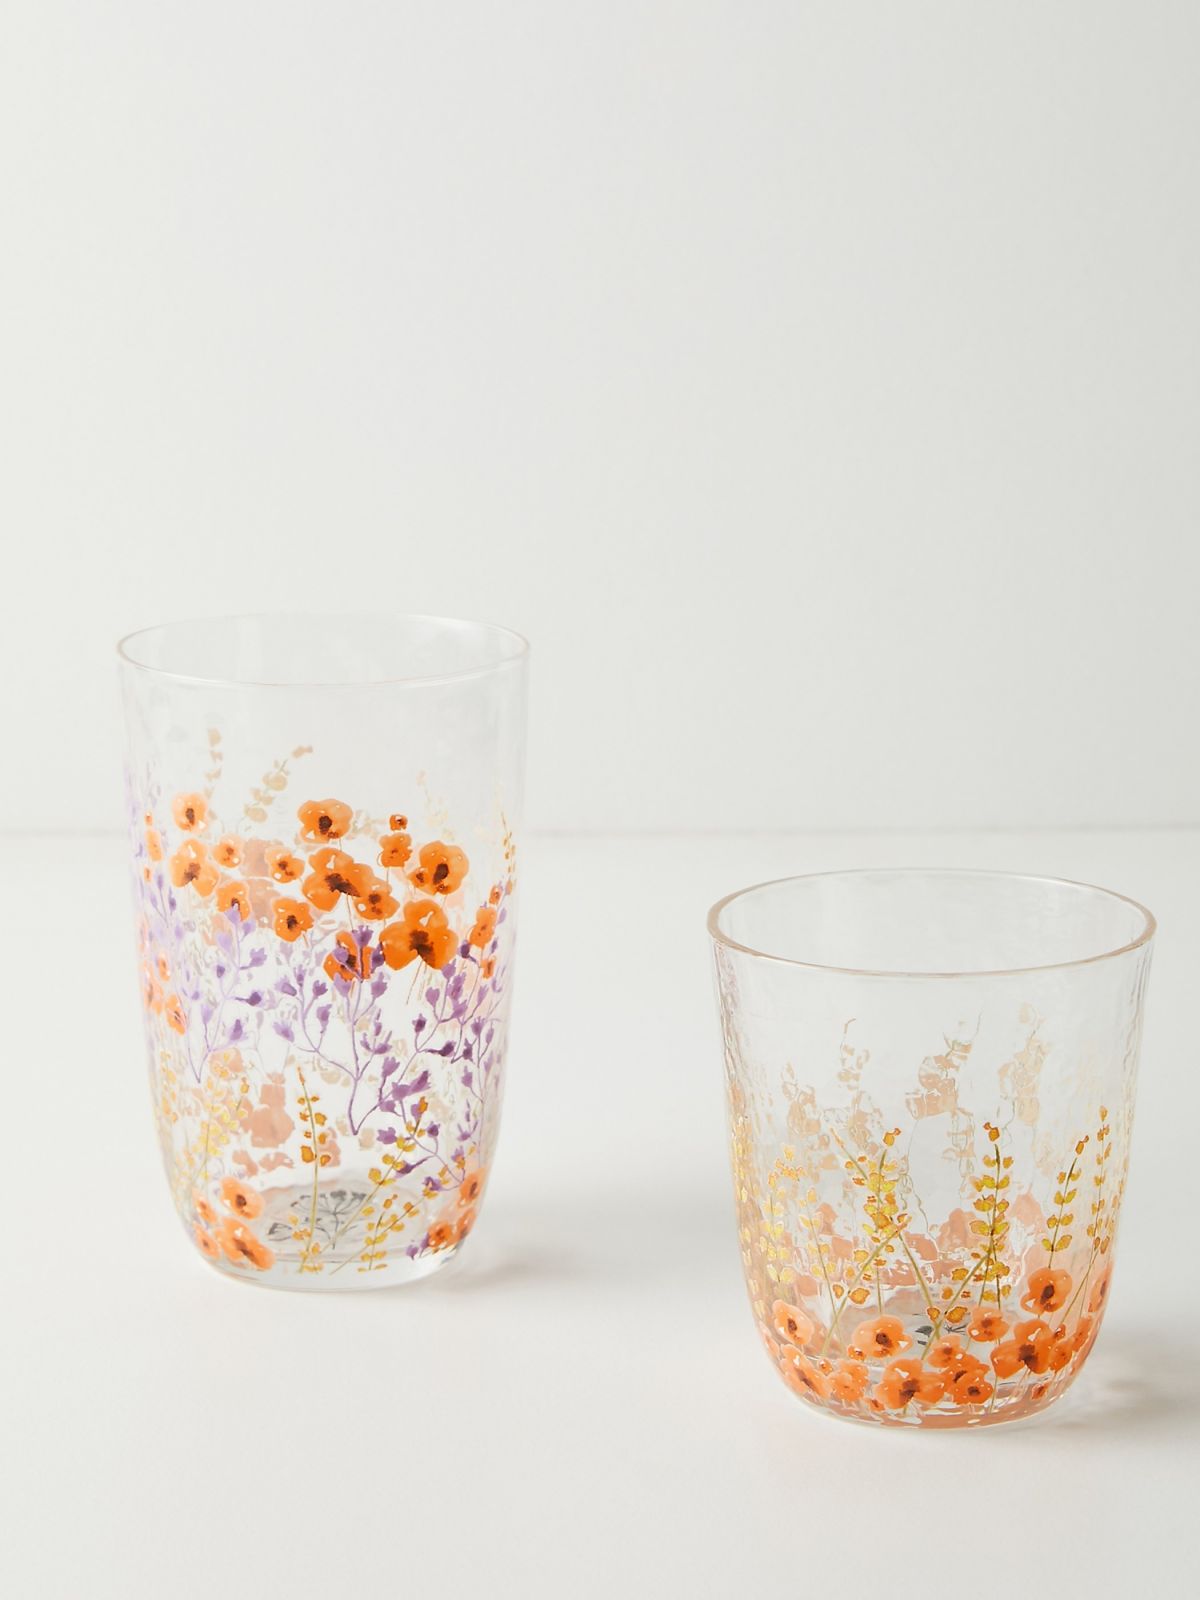  כוס זכוכית גבוהה בהדפס פרחים Clemence של ANTHROPOLOGIE